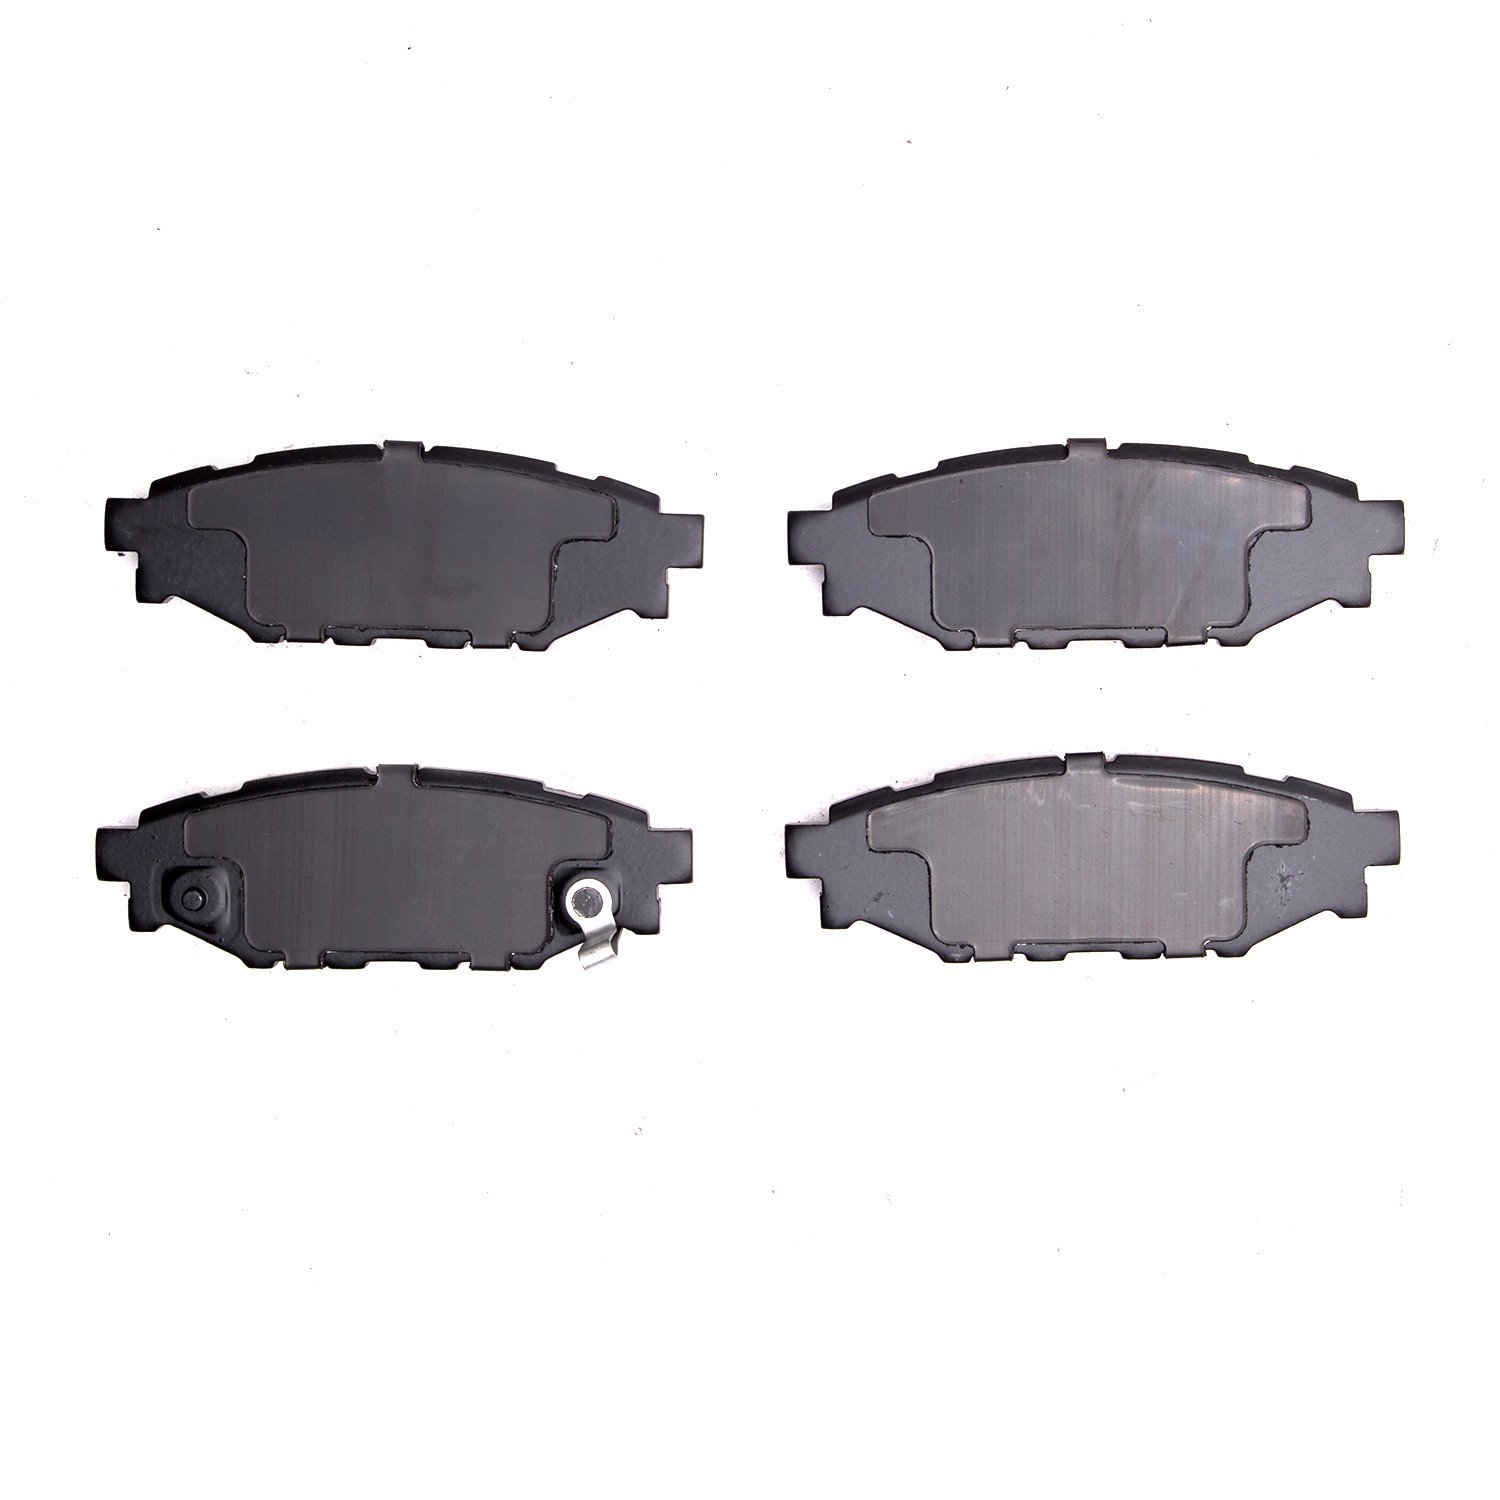 1310-1114-00 3000-Series Ceramic Brake Pads, Fits Select Subaru, Position: Rear